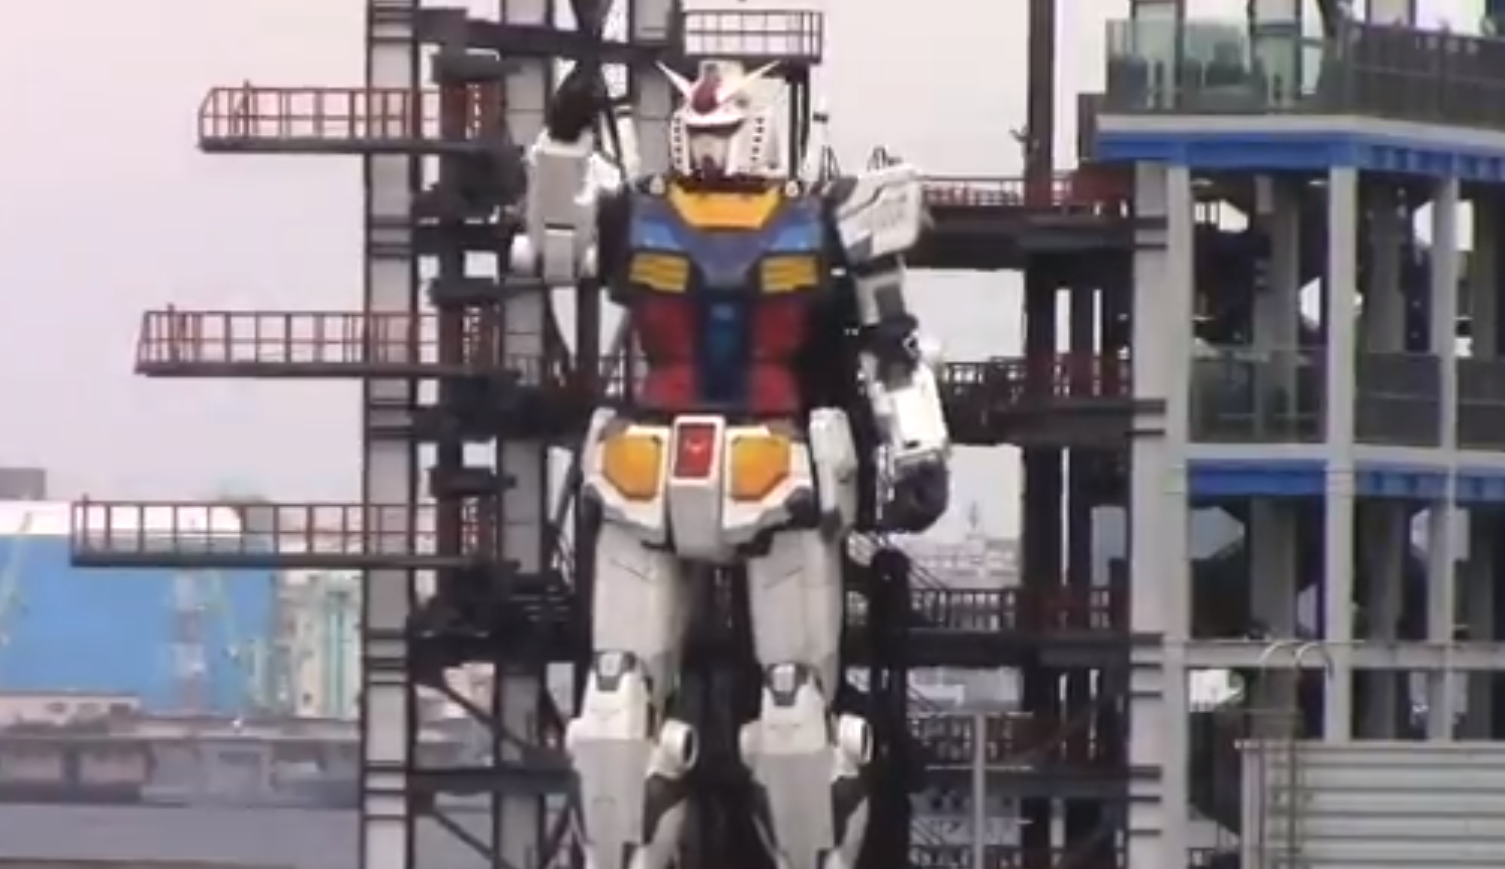 Video: Japón muestra su IMPRESIONANTE robot gigante que se mueve libremente